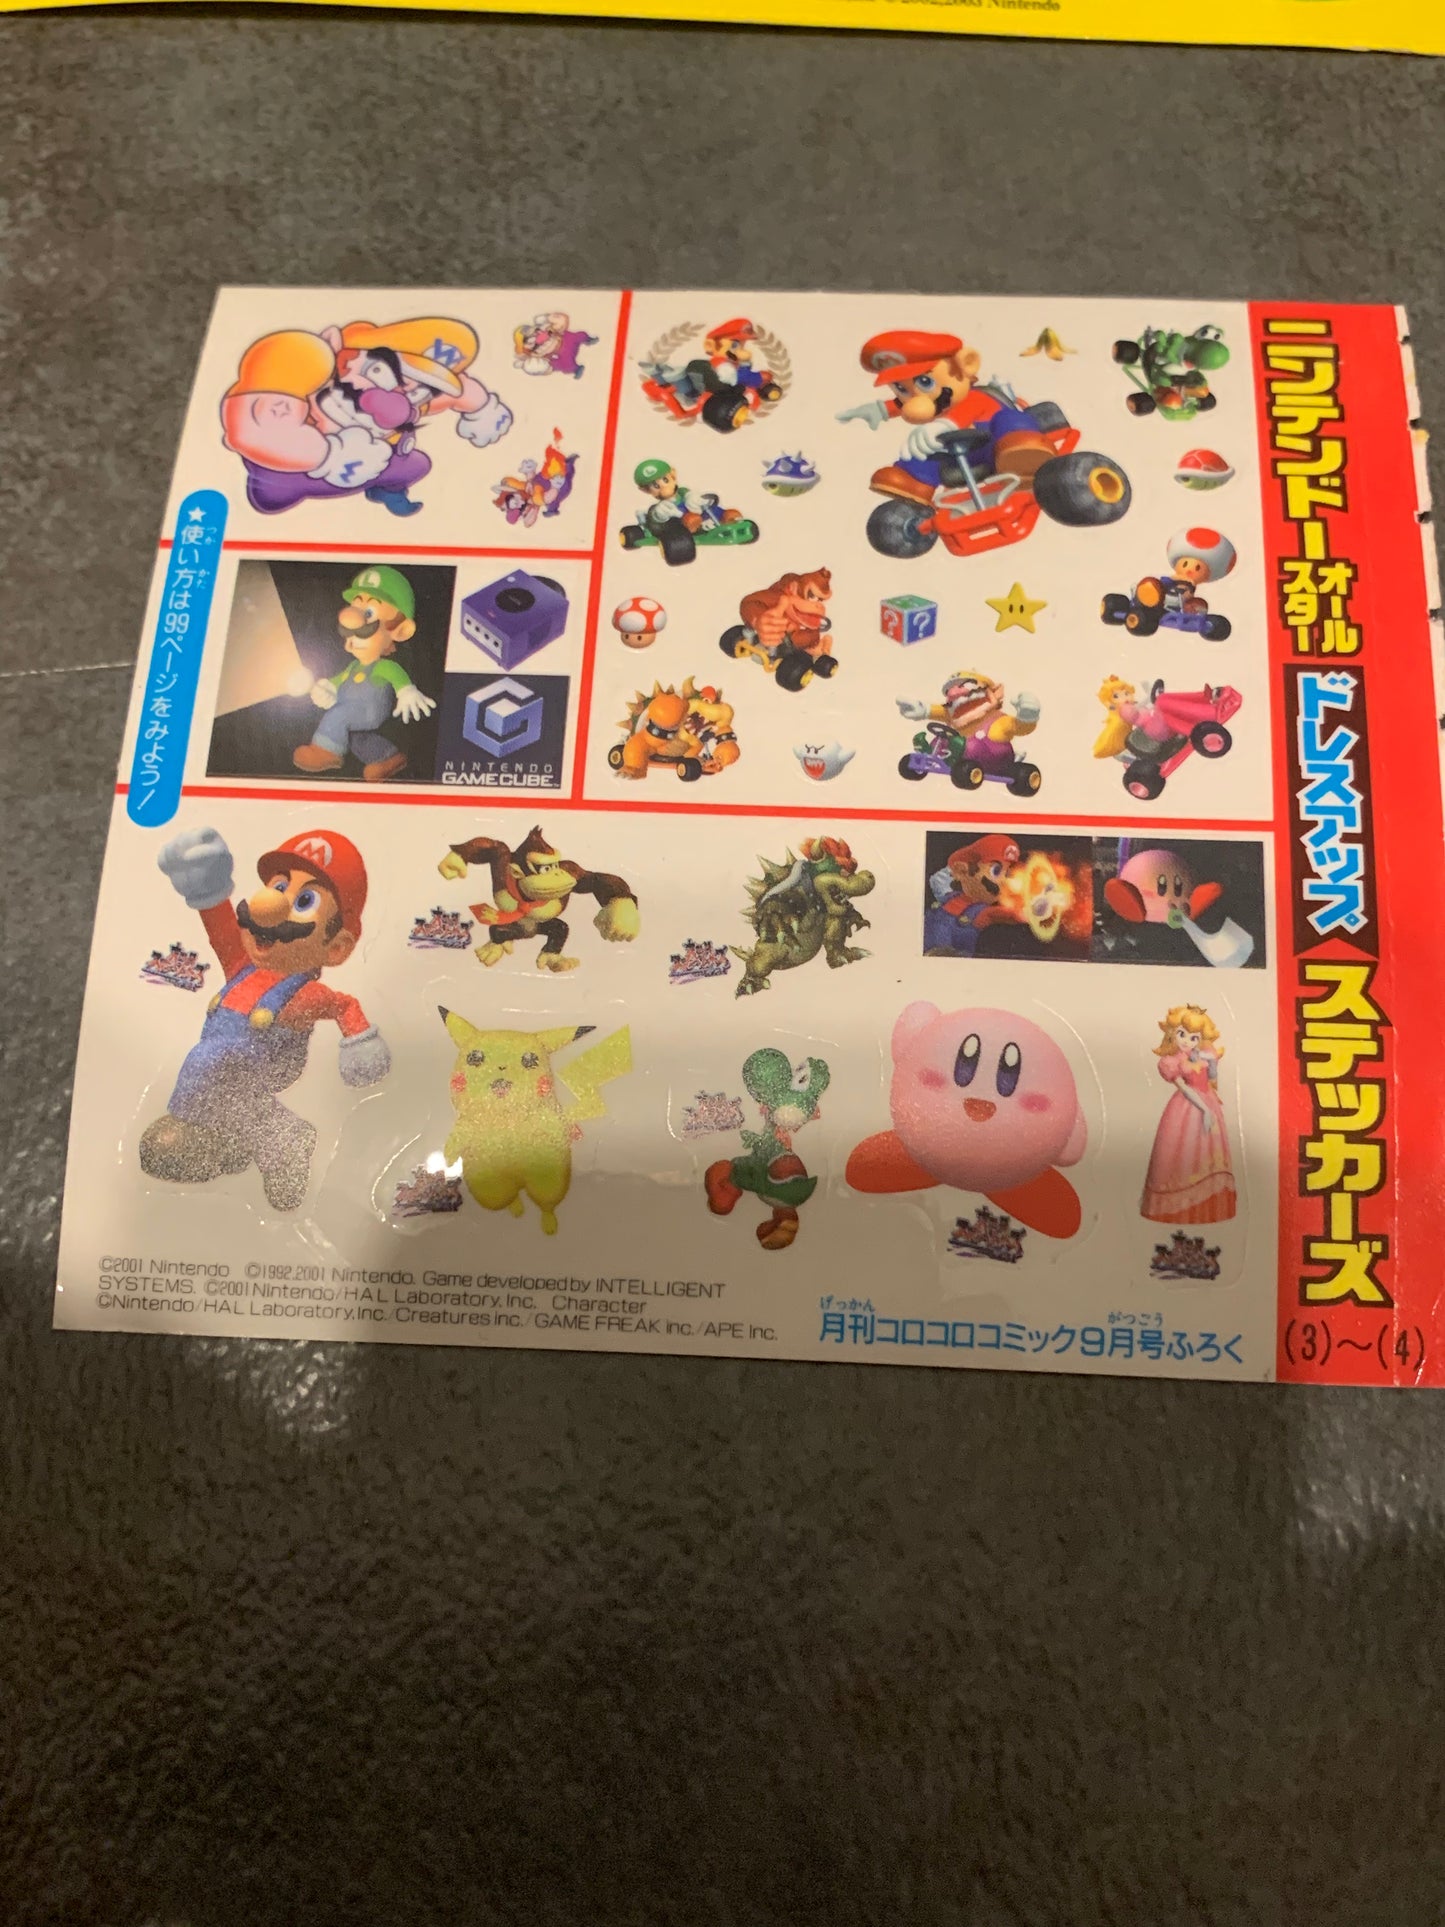 Pegatinas promocionales de Super Smash Bros Melee, Luigi's Mansion, Wario y Mario Kart